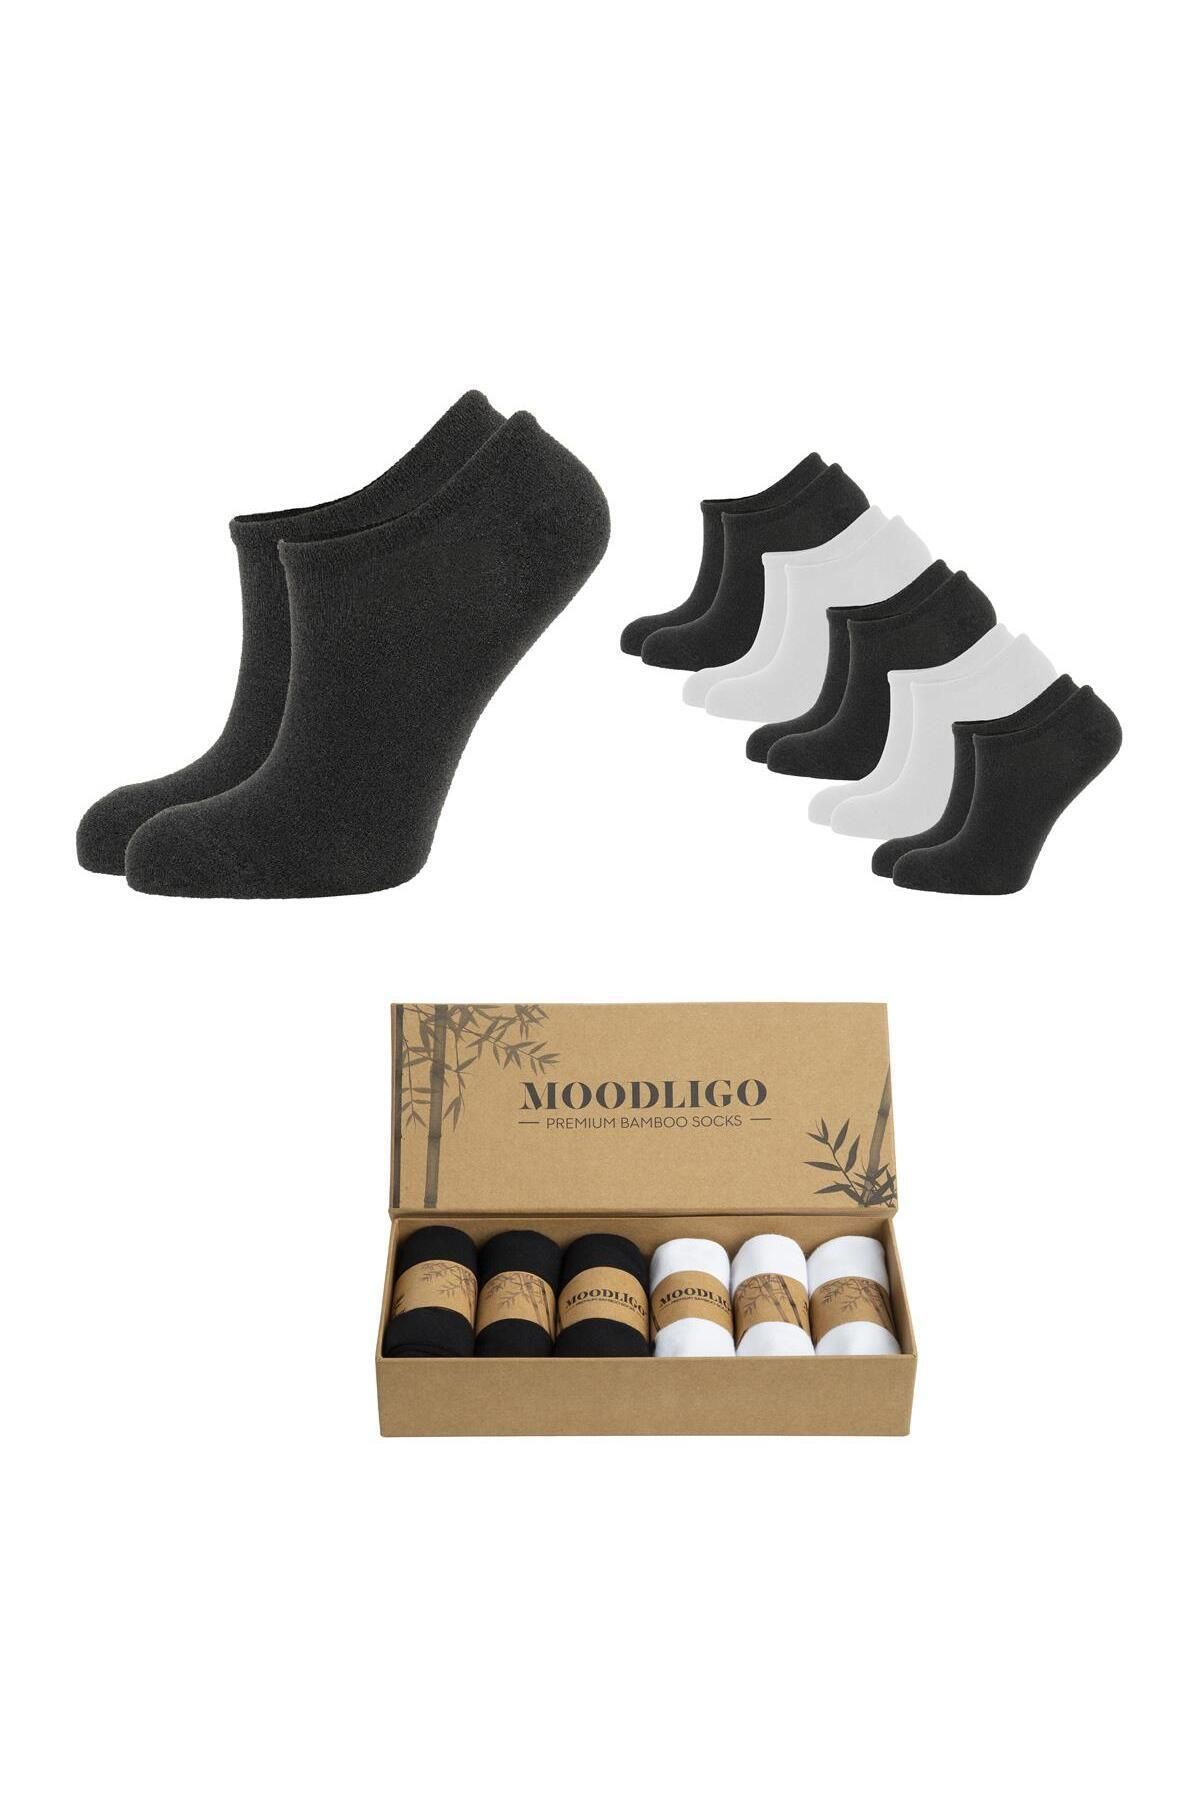 Moodligo Erkek 6'lı Premium Bambu Bilekte Spor Çorabı / Sneaker Çorap - 3 Siyah 3 Beyaz-kutulu